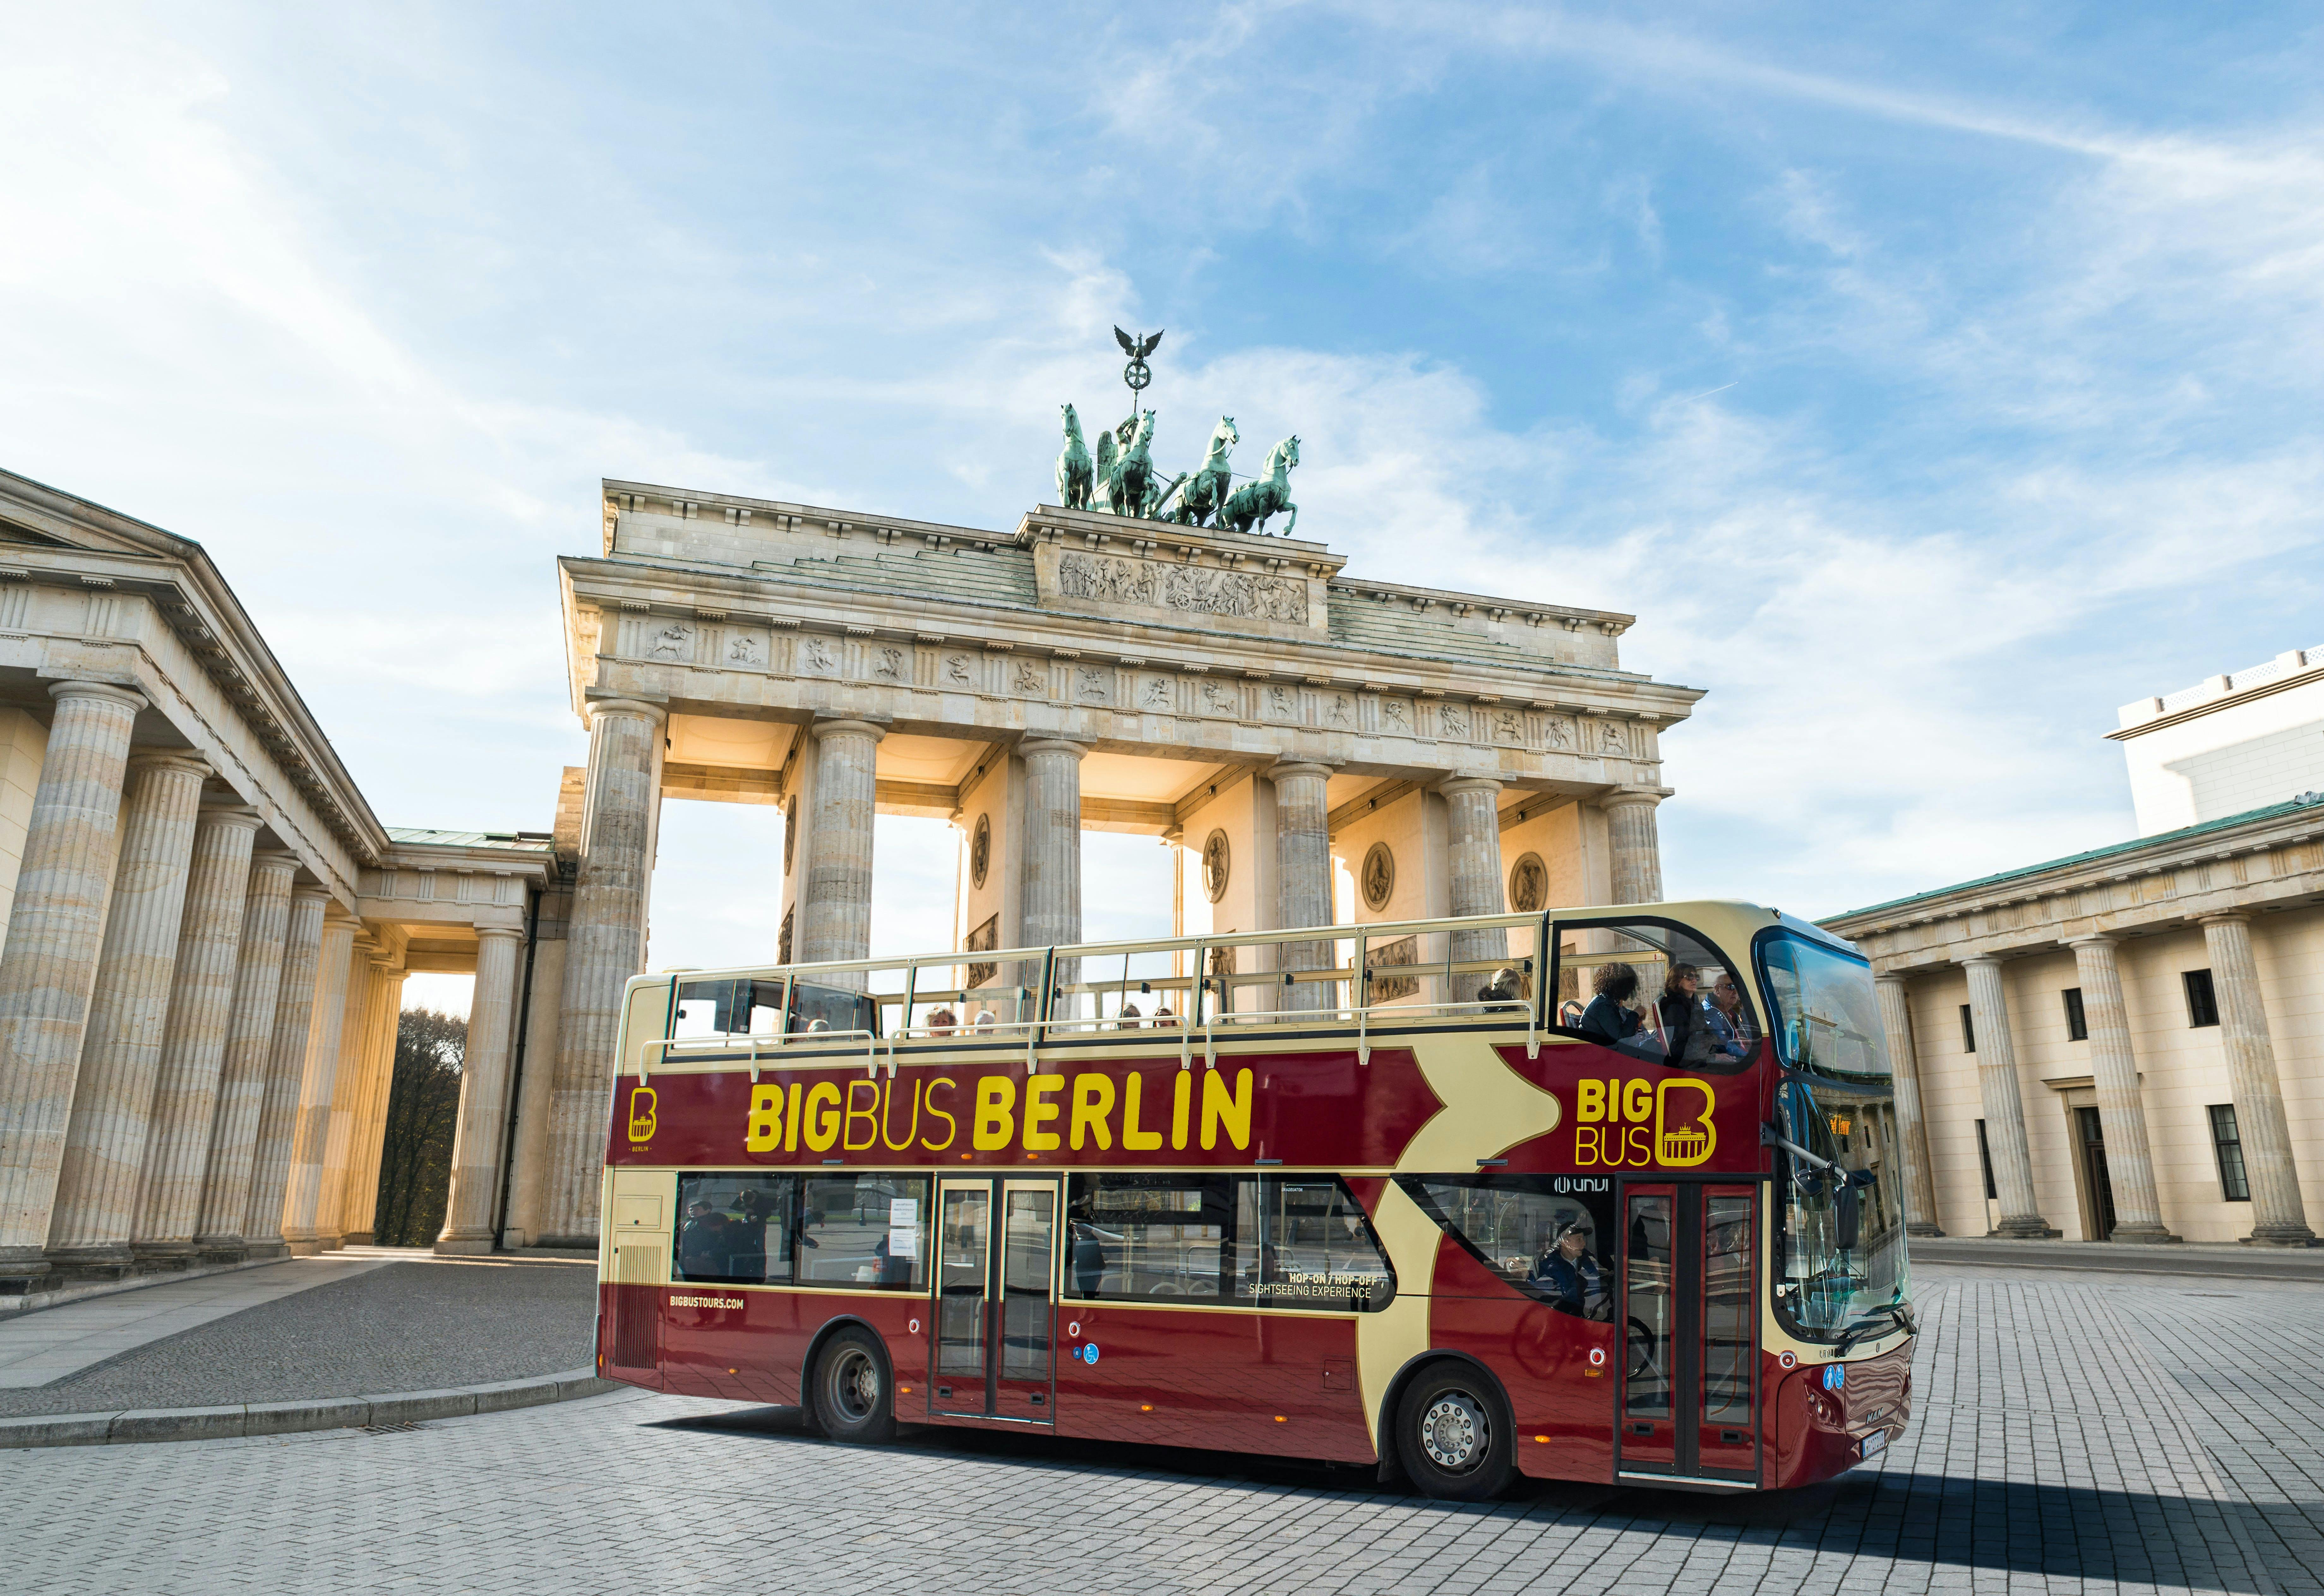 Big Bus tour of Berlin